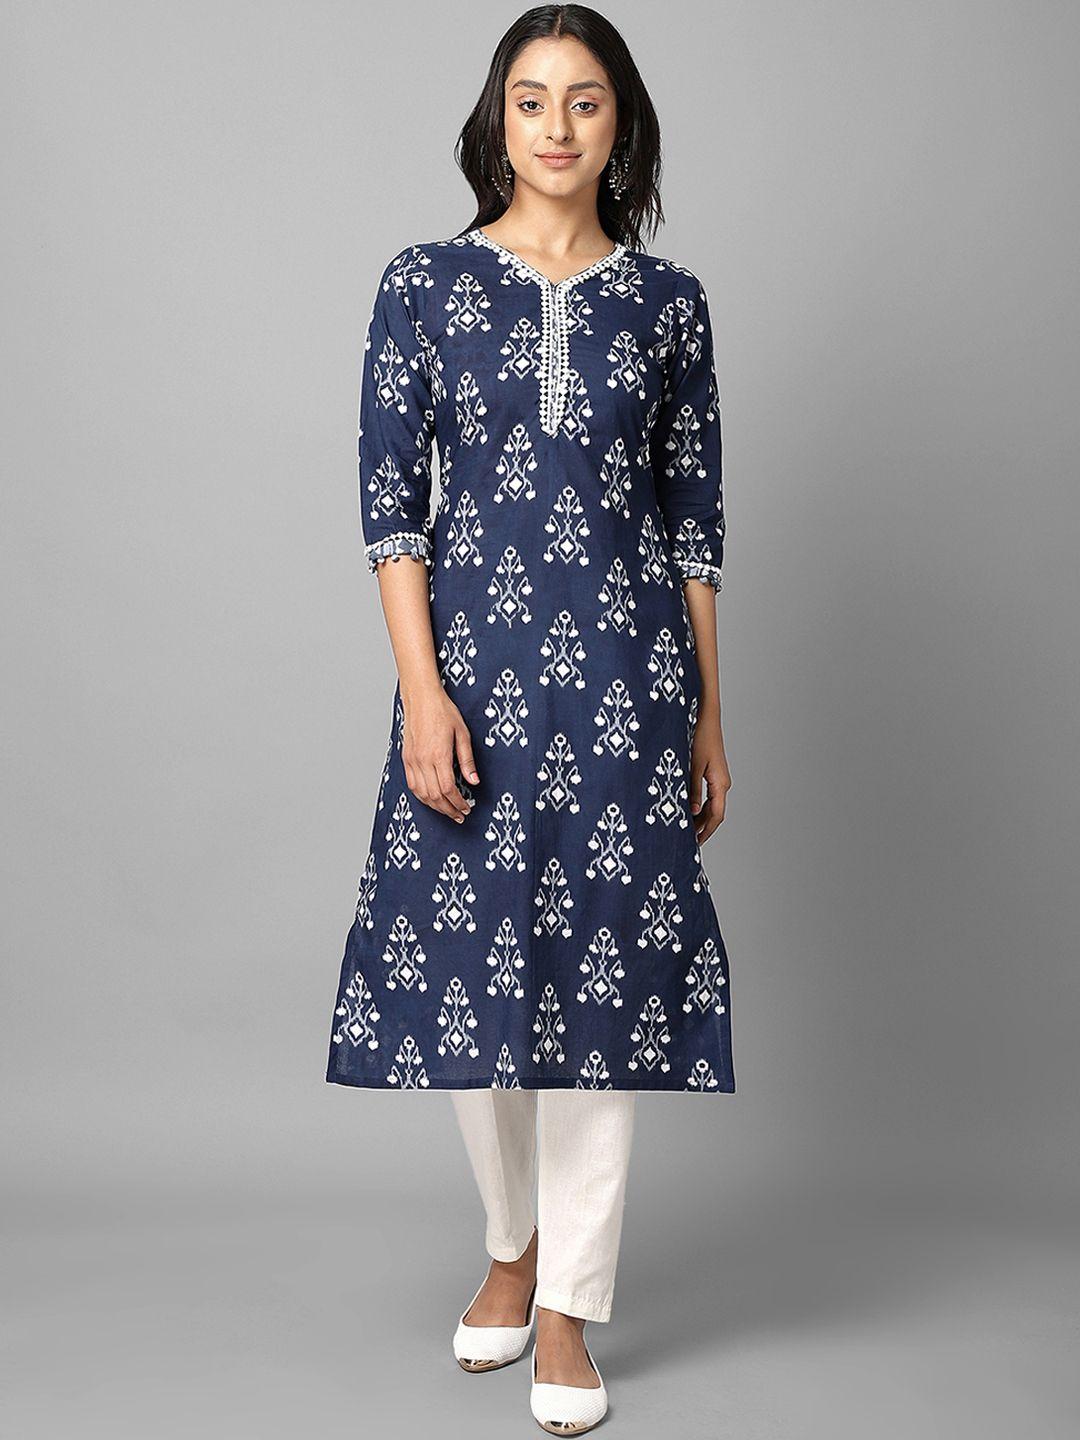 azira women navy blue & off white geometric printed kurta